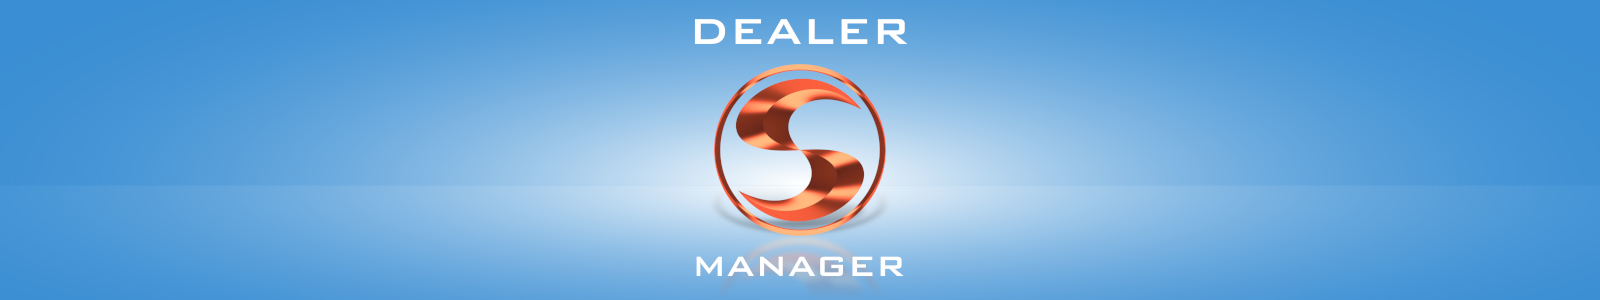 Dealer Manager - программа для продавцов окон и дверей